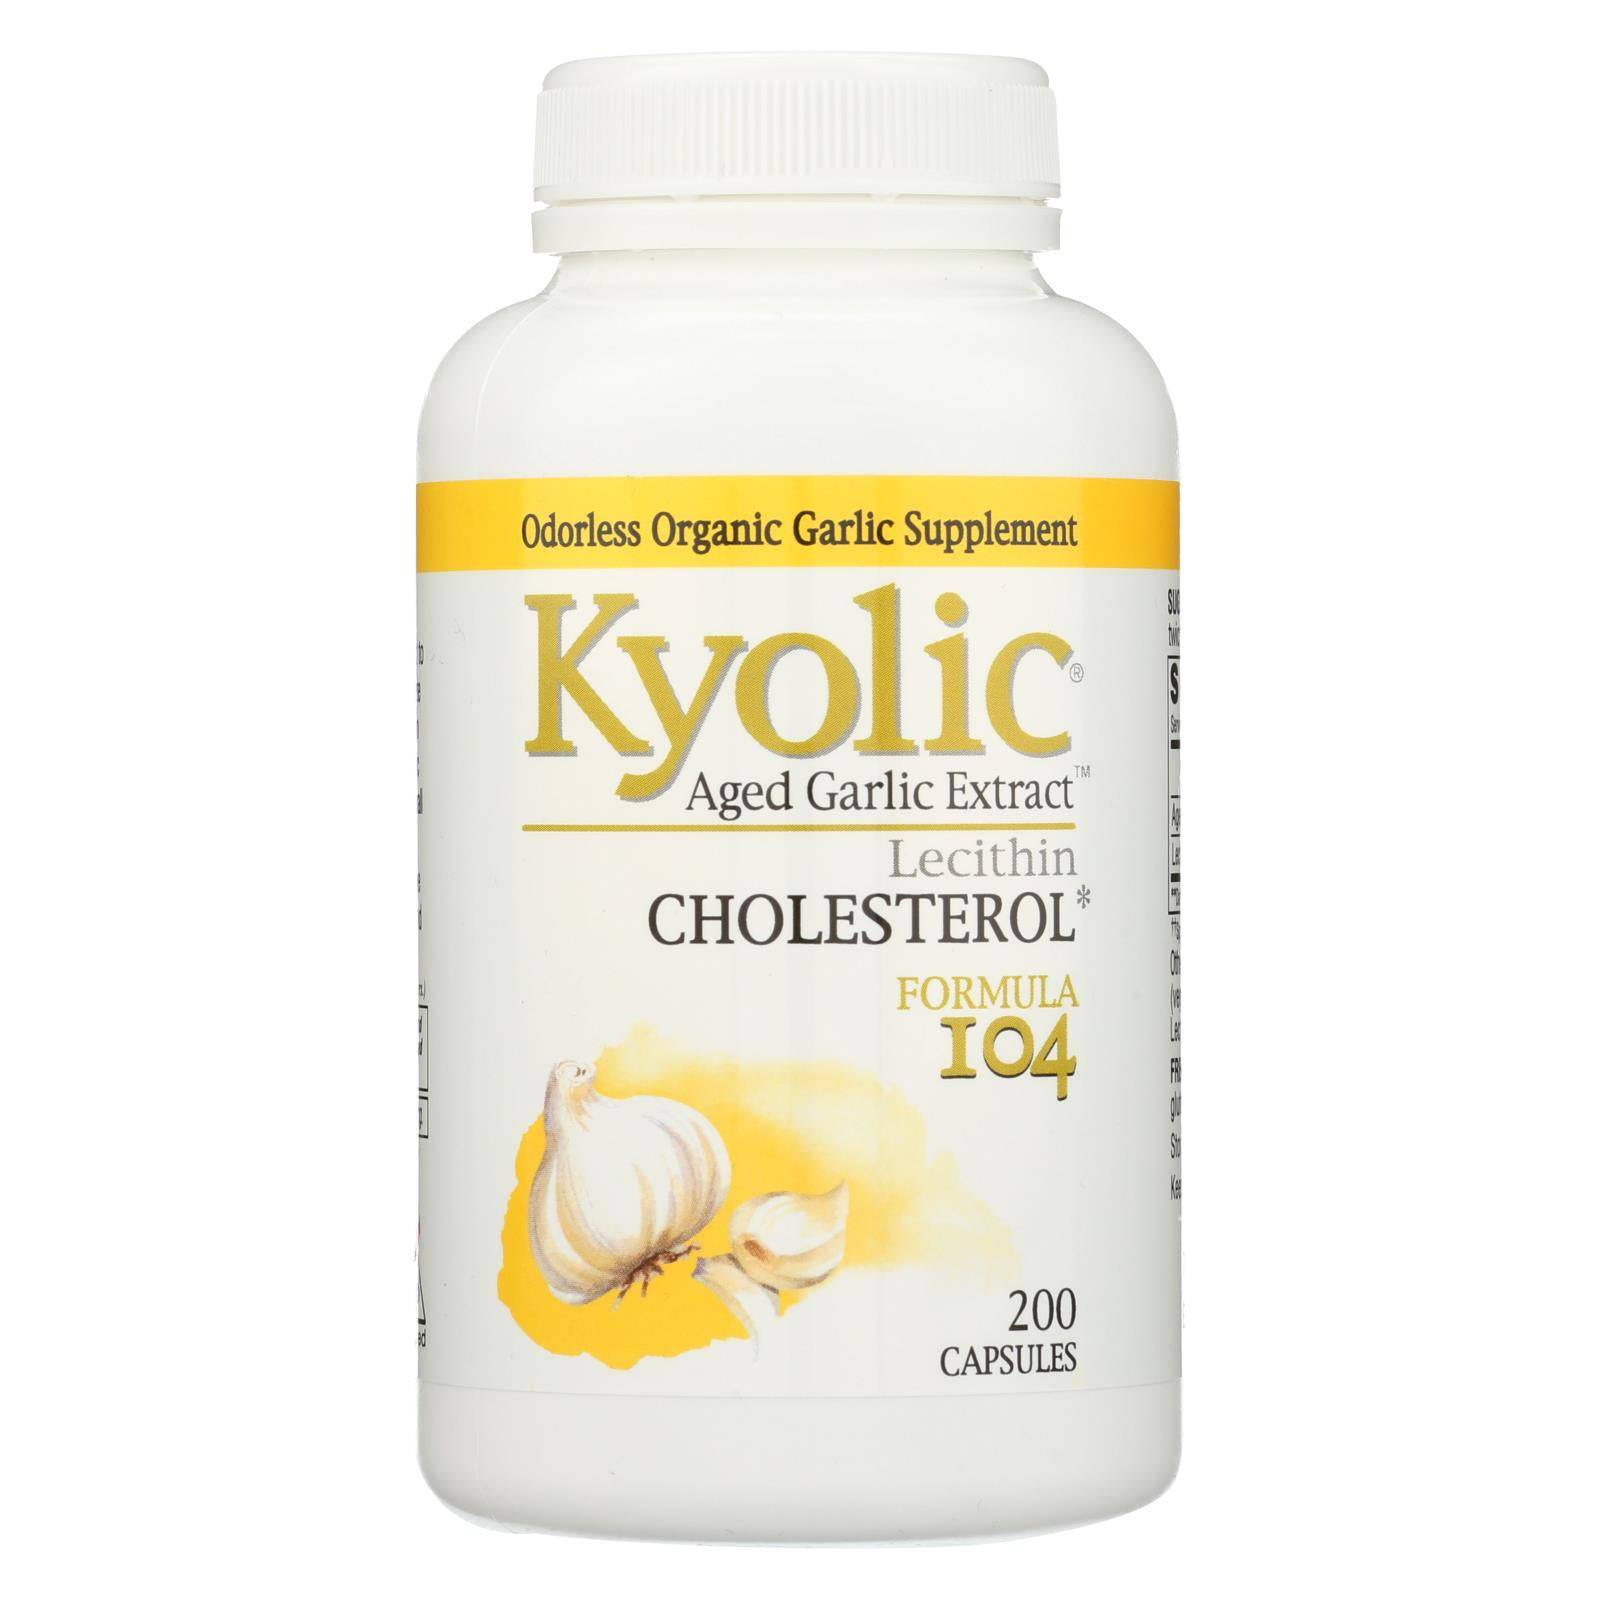 Buy Kyolic - Aged Garlic Extract Cholesterol Formula 104 - 200 Capsules  at OnlyNaturals.us